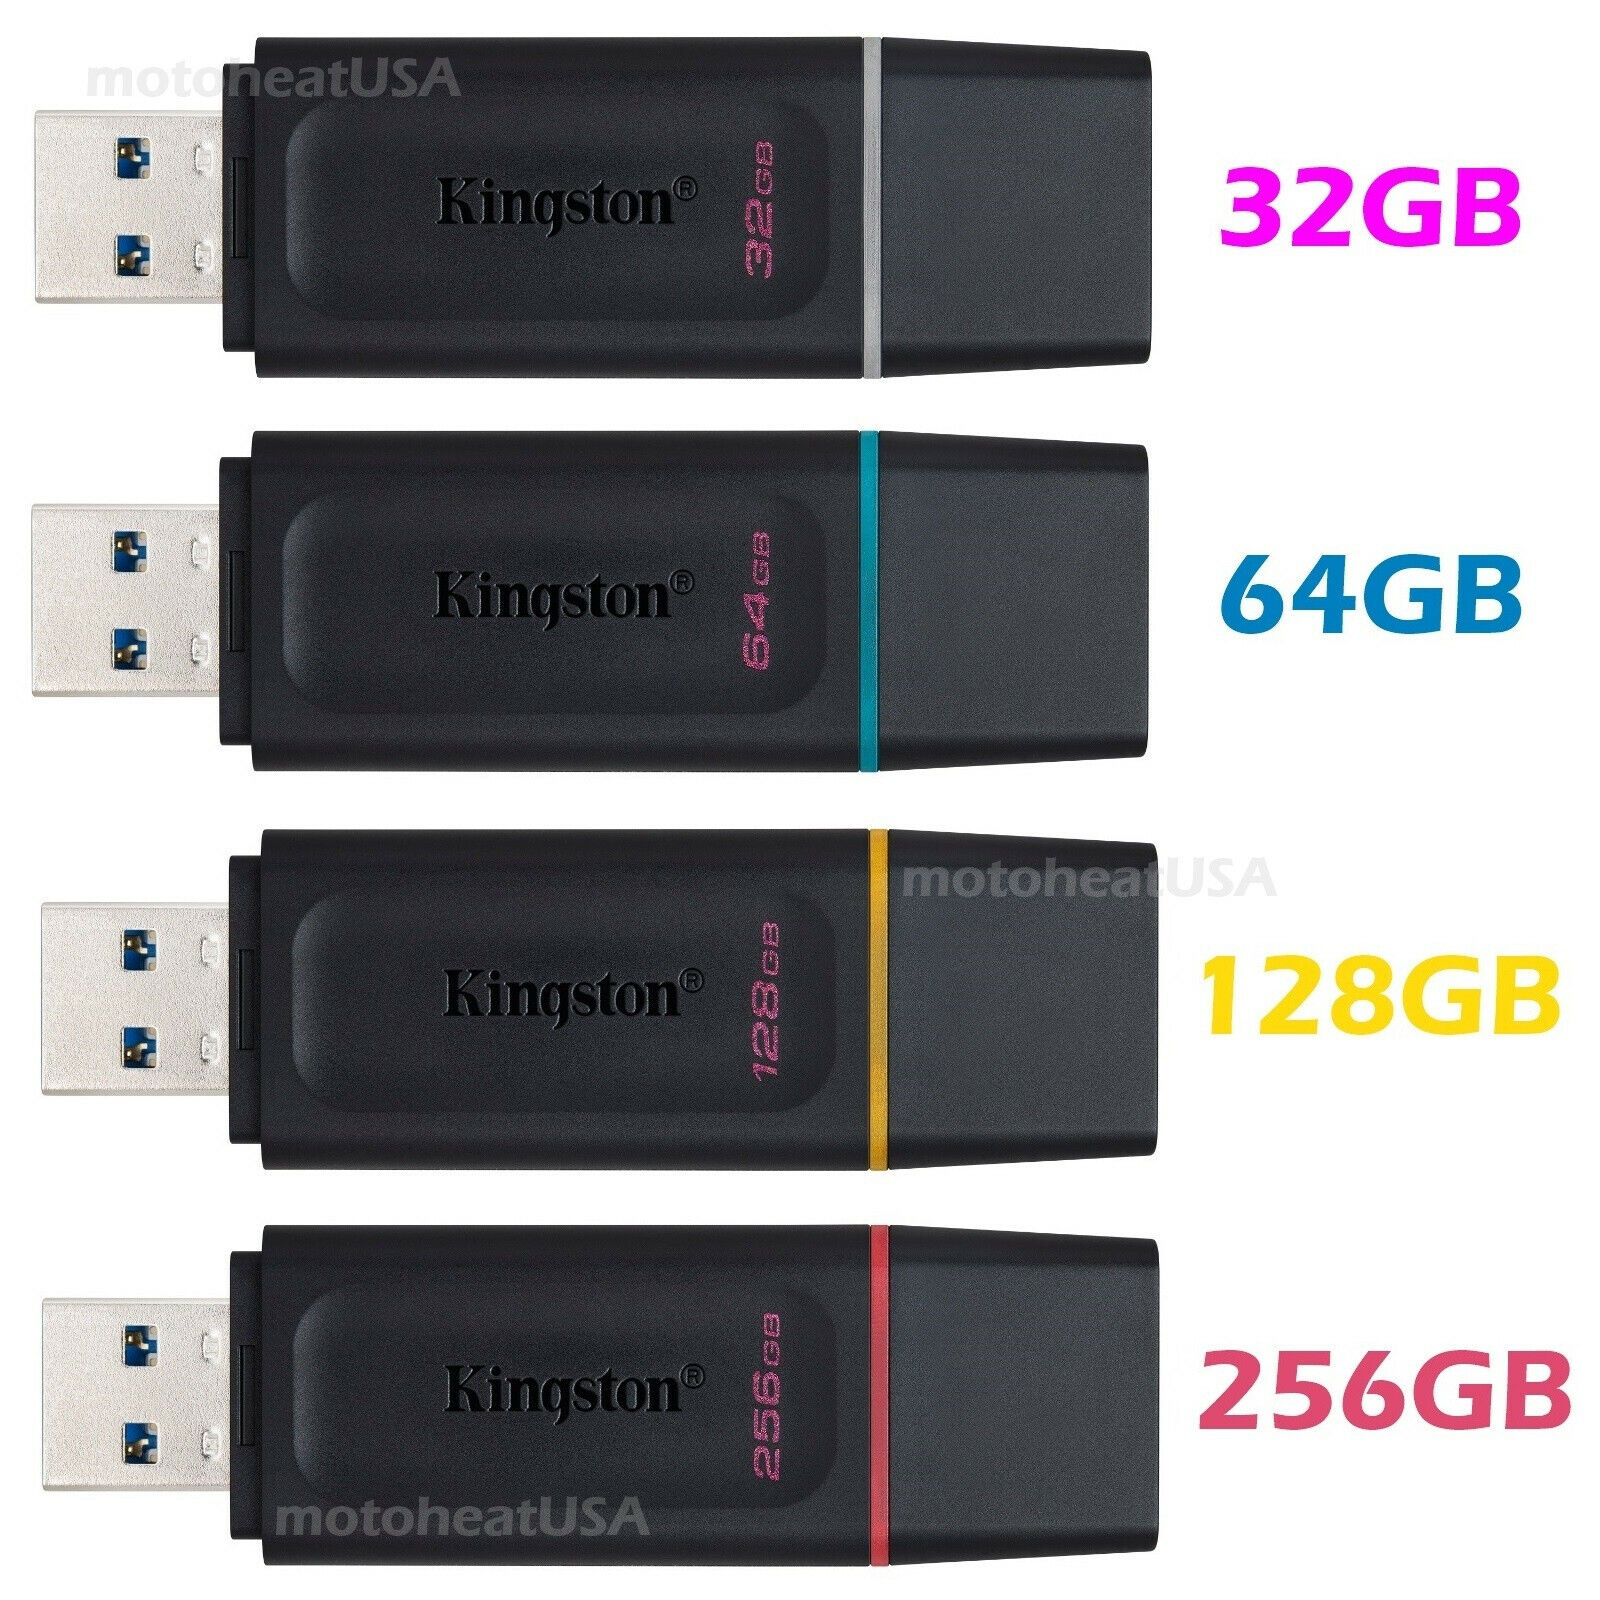 Kingston 32GB 64GB 128GB 256GB USB 3.0 Flash Drive Thumb Memory Stick Pen lot